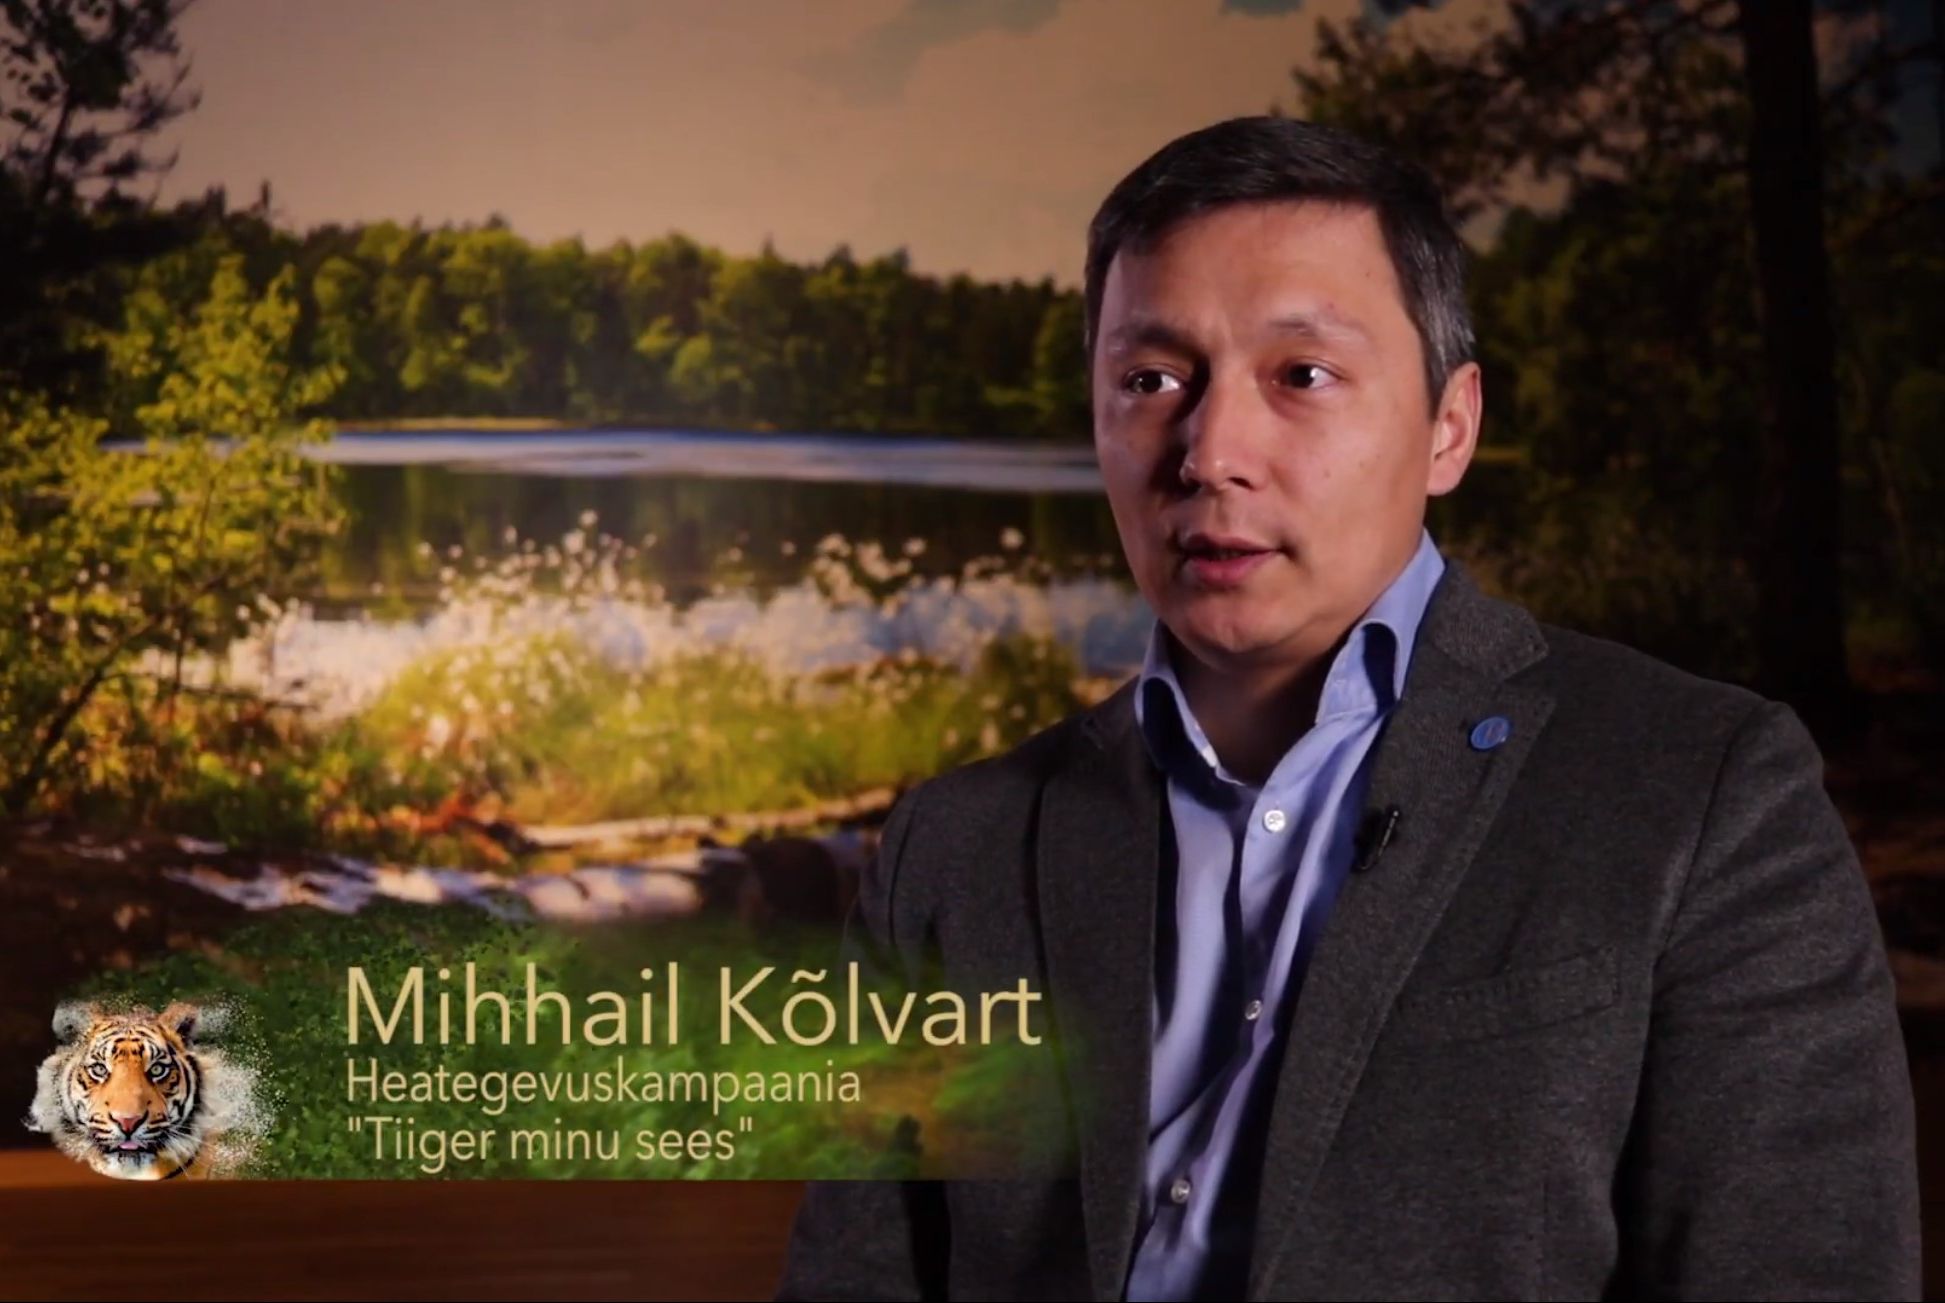 VIDEO! “Tiiger minu sees!”! Heategevuskampaaniaga tiigri heaks liitus ka Mihhail Kõlvart